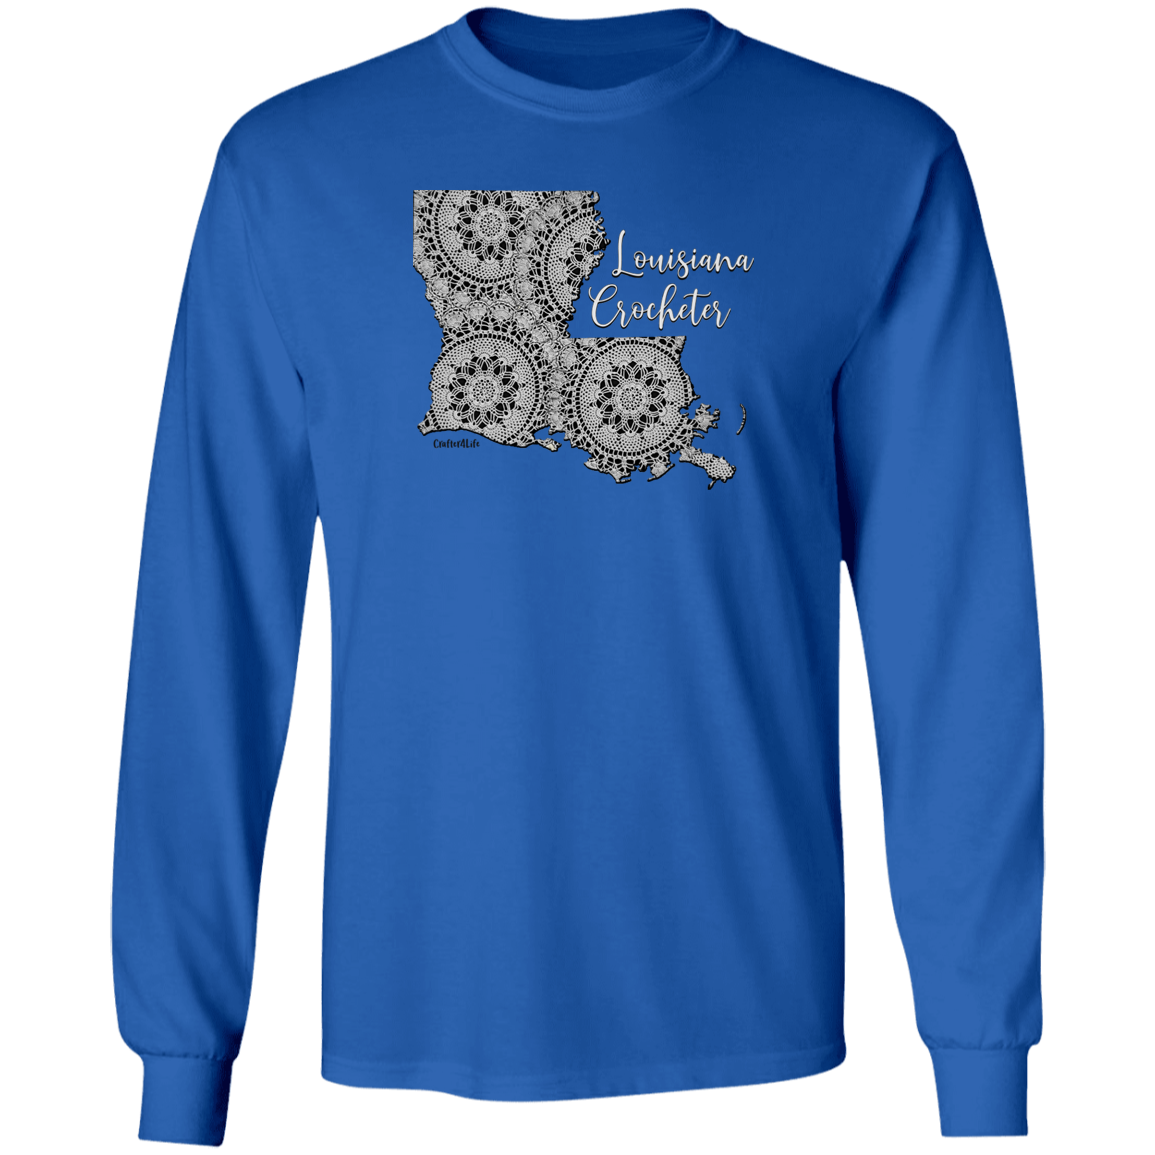 Louisiana Crocheter LS Ultra Cotton T-Shirt